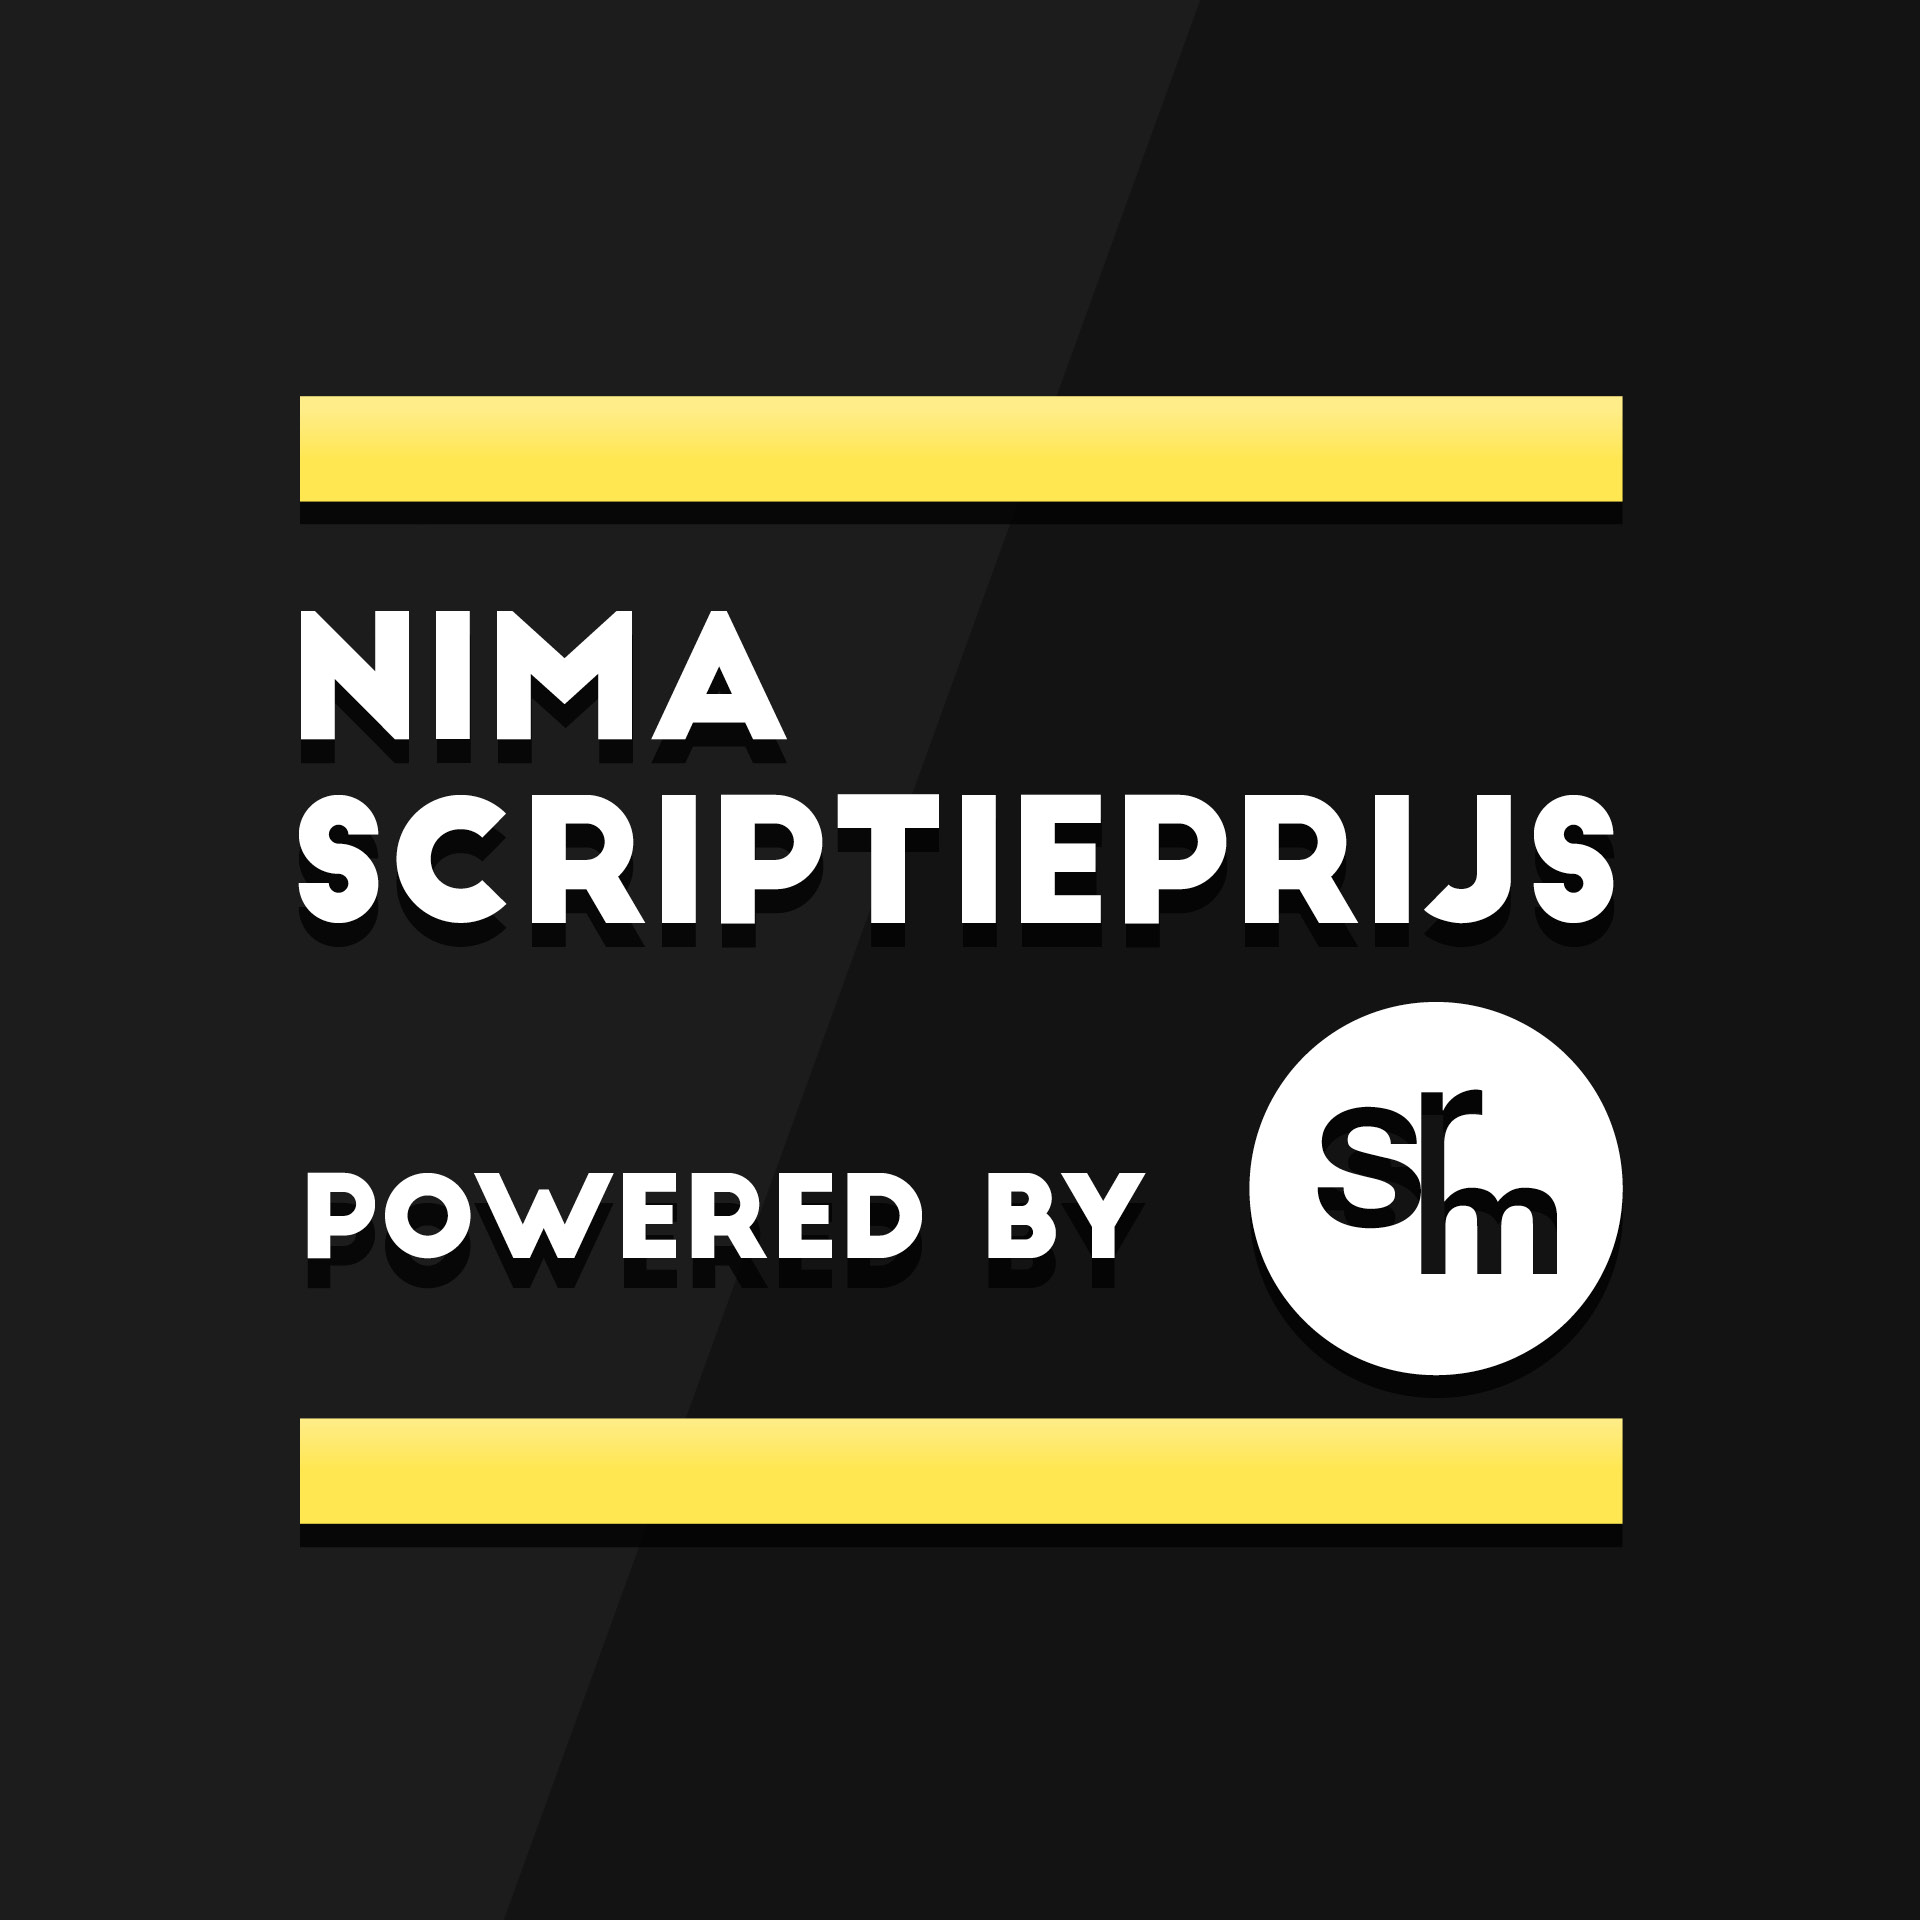 NIMA Scriptieprijs Powered by SRM – de genomineerden